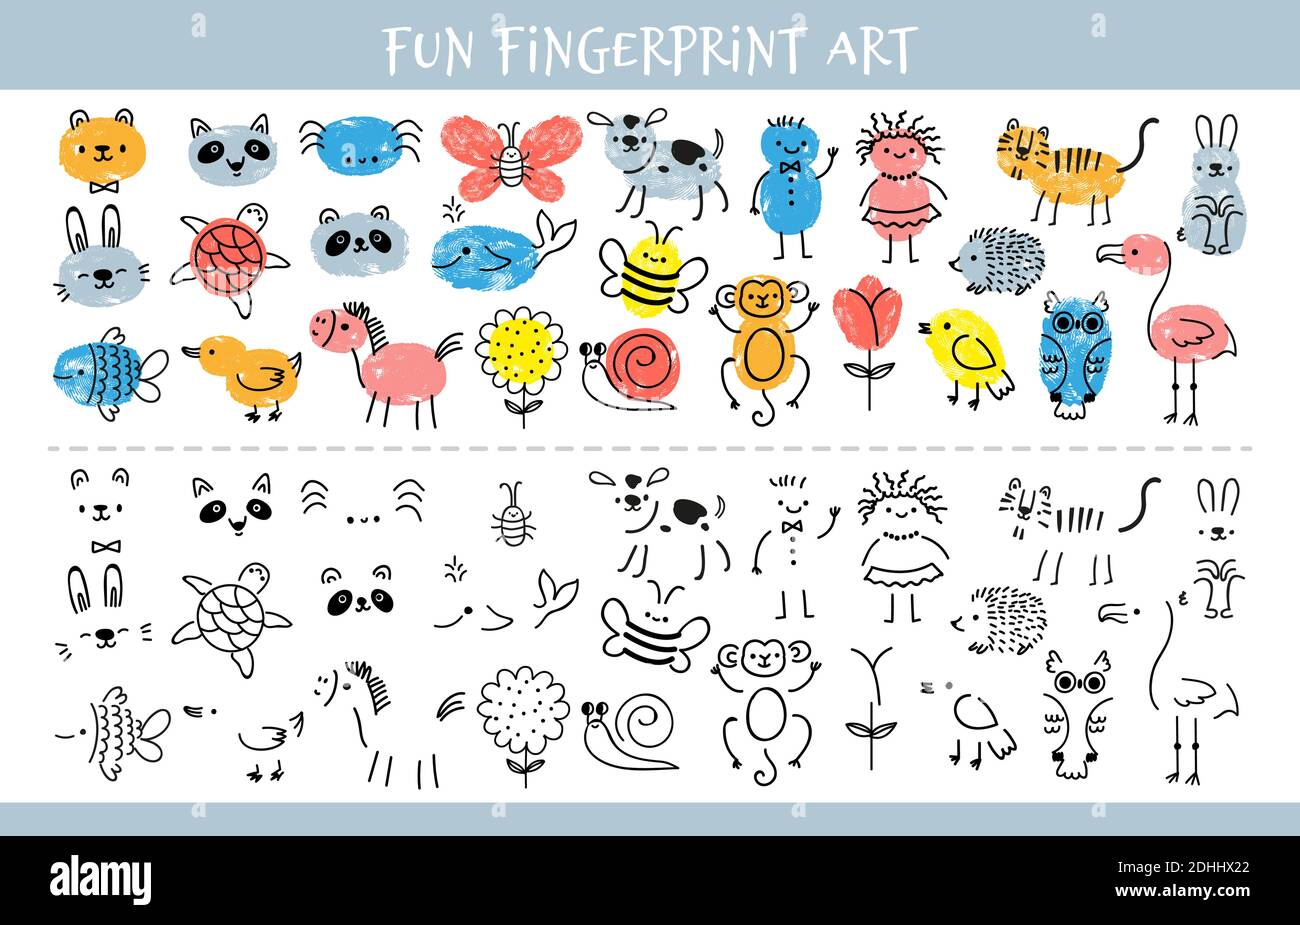 ذو امتياز صوت طين  Paint with finger prints. Kids fingerprint learning art game and quiz  worksheet with characters. Education drawing for children vector sheet  Stock Vector Image & Art - Alamy